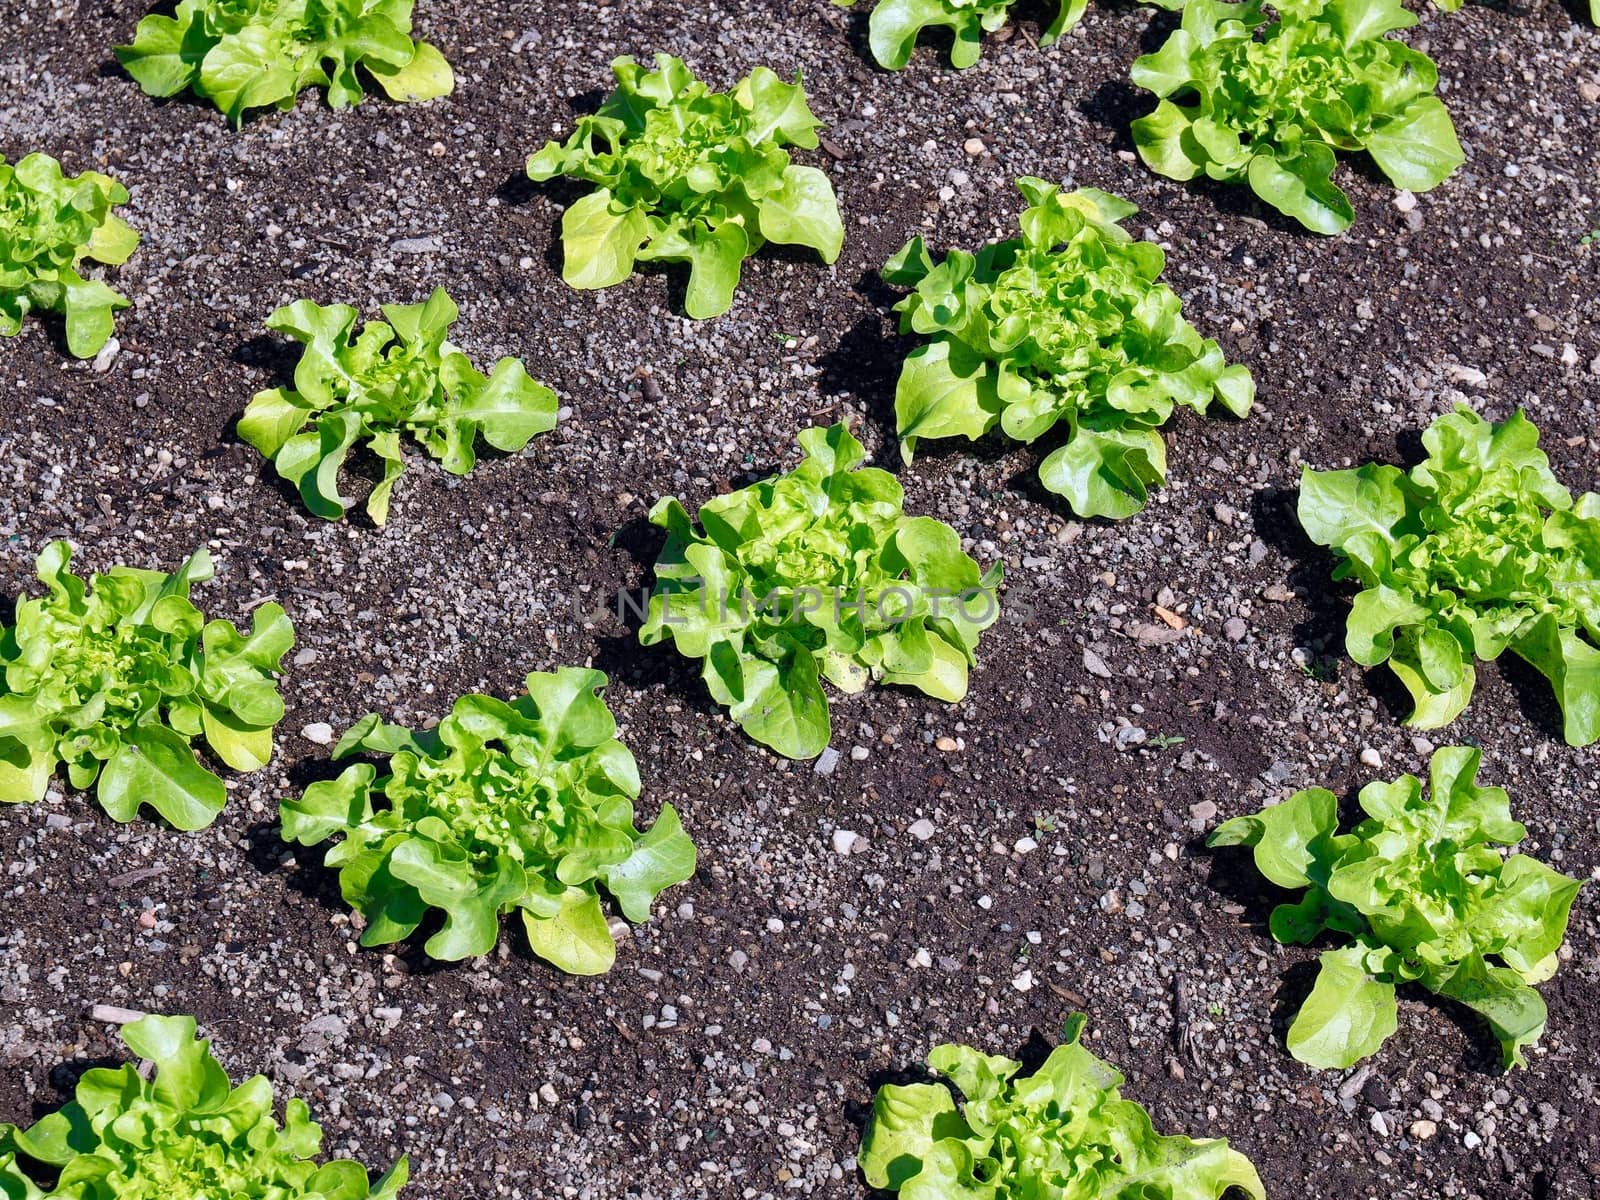 Young green salad plants in a garden by Stimmungsbilder